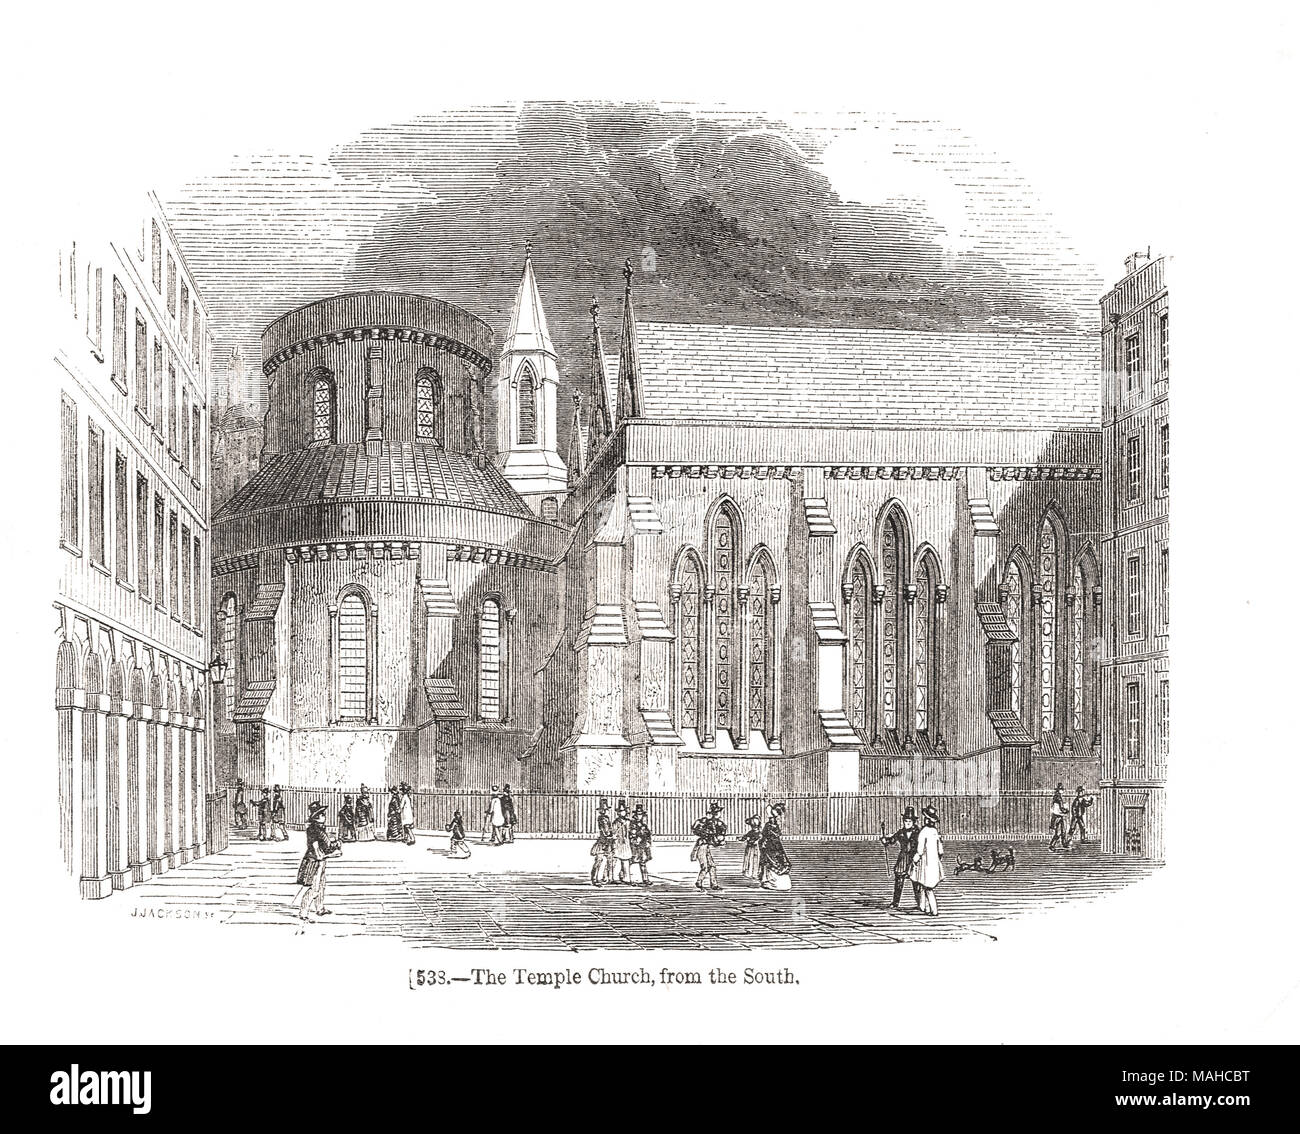 L'église du Temple, ville de Londres, Angleterre, 19e siècle scène de la South Banque D'Images